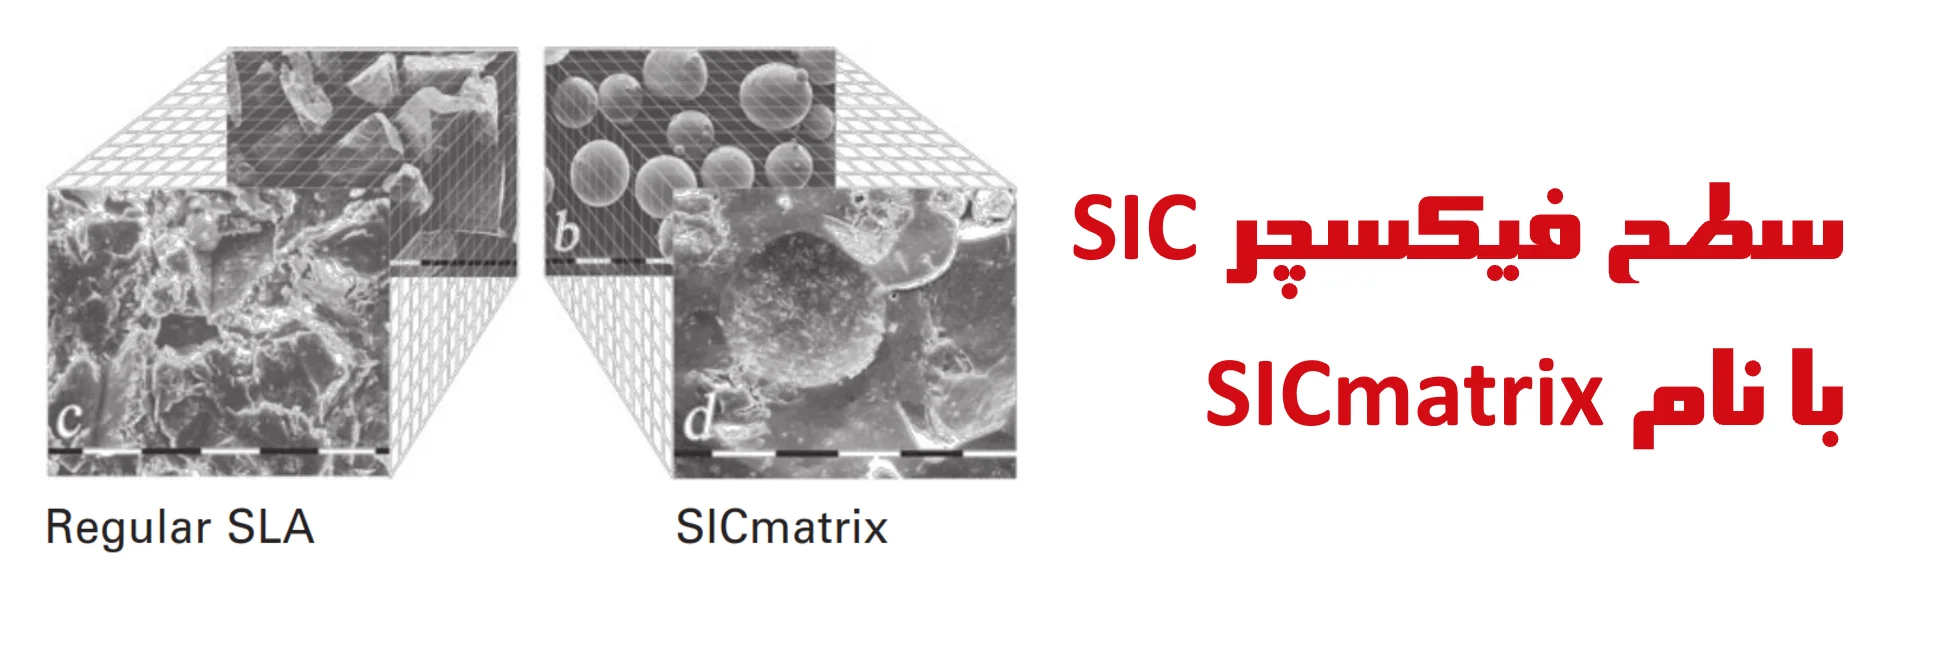 سطح فیکسچر SIC با نام SICmatrix